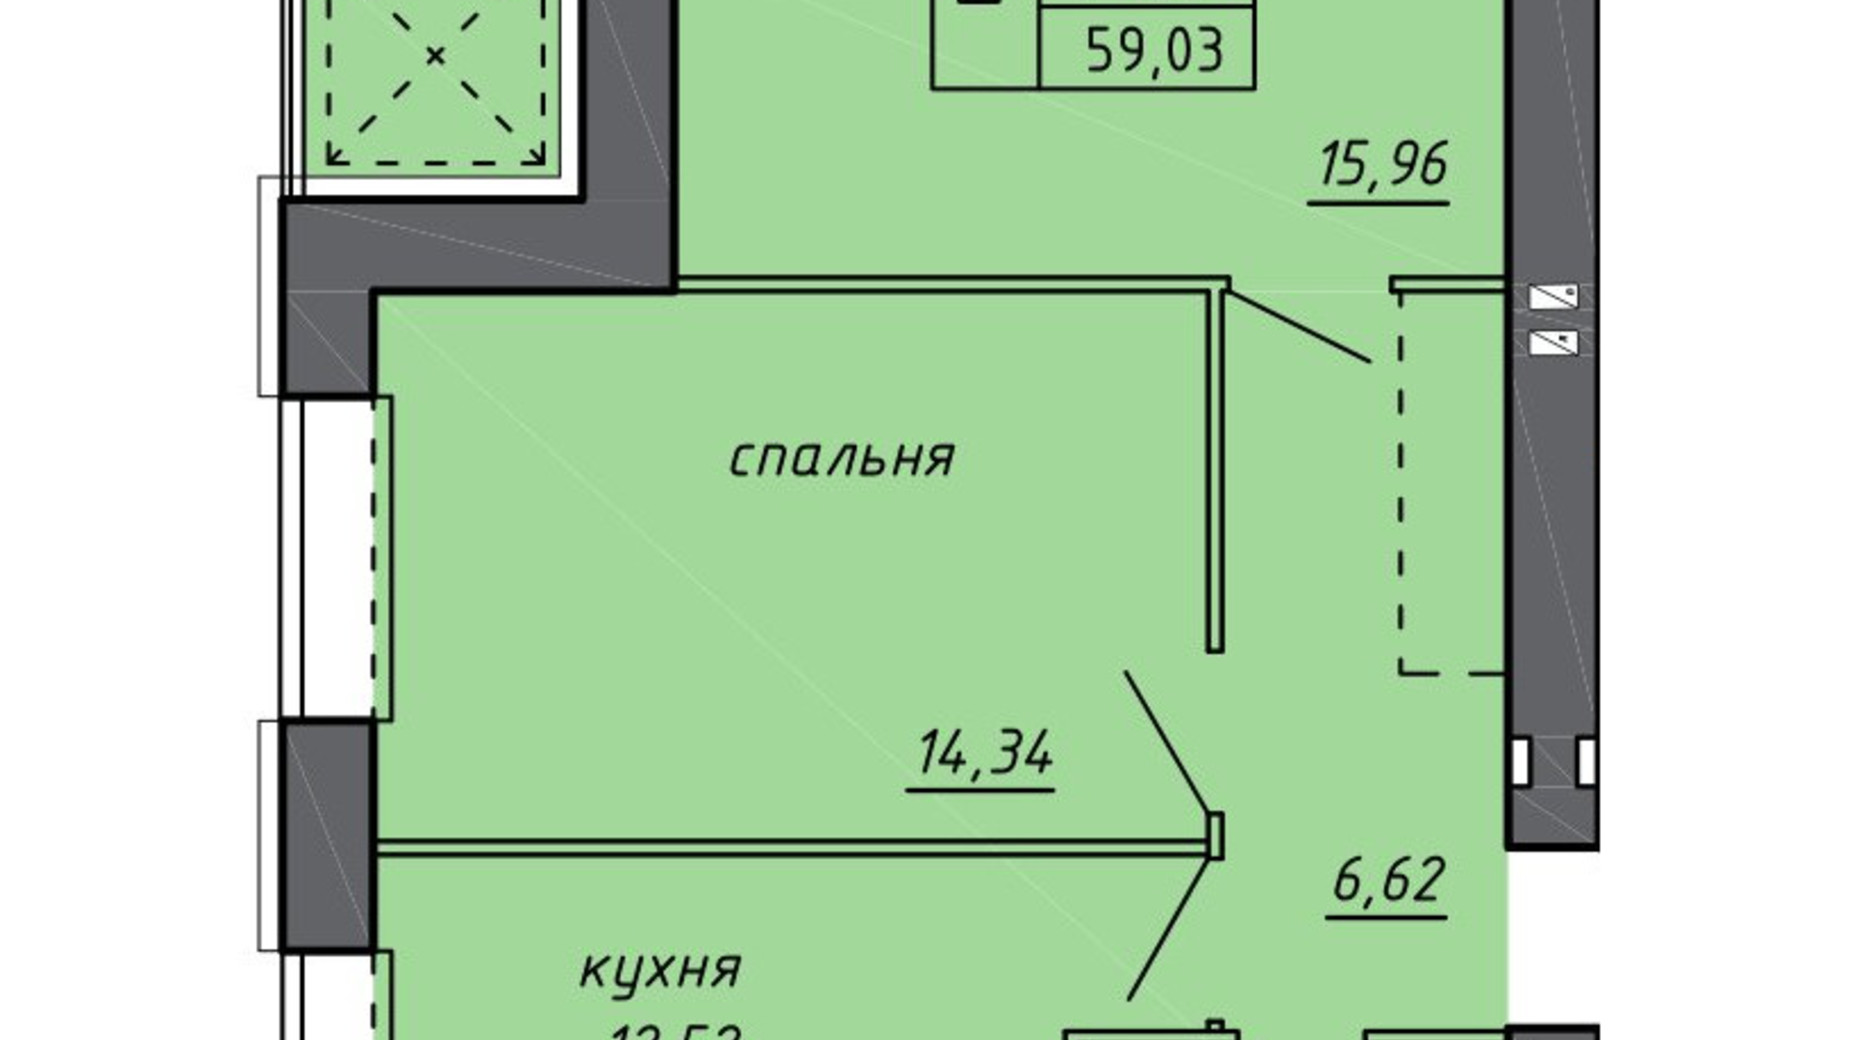 Планировка 2-комнатной квартиры в ЖК Новые Байковцы 59.03 м², фото 600707